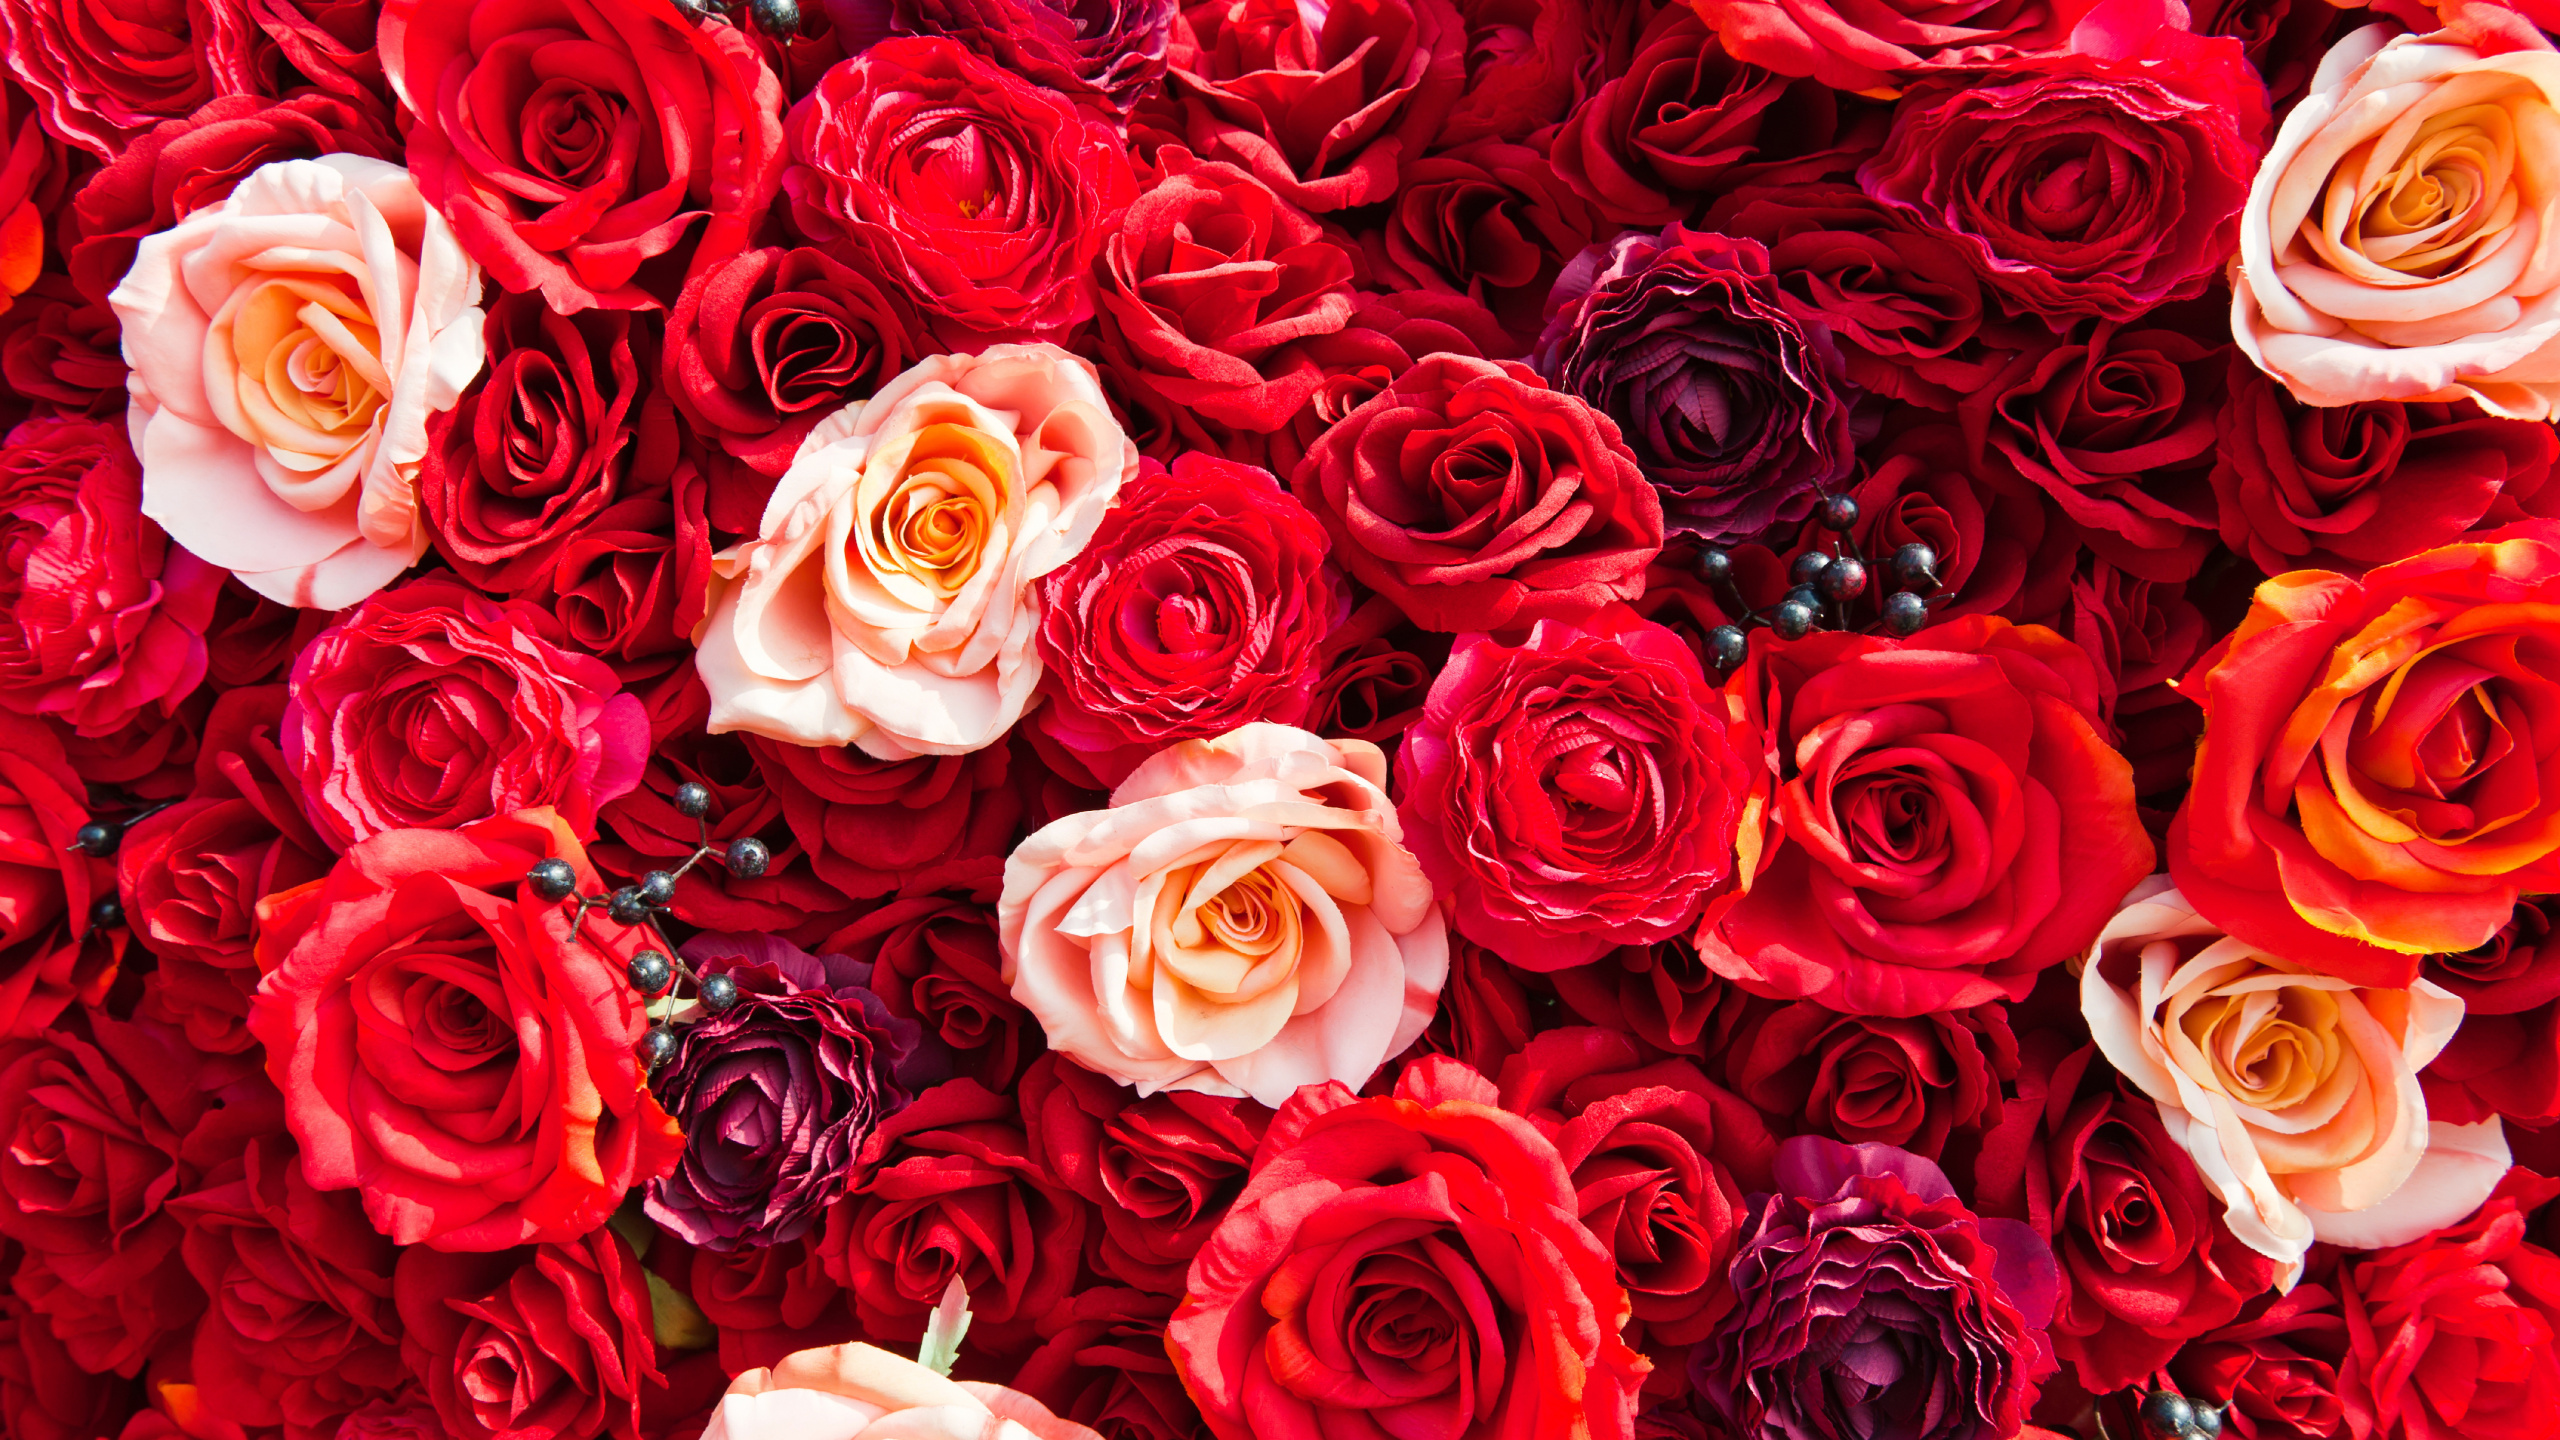 玫瑰花园, 红色的, 玫瑰家庭, 切花, 创造性的艺术 壁纸 2560x1440 允许